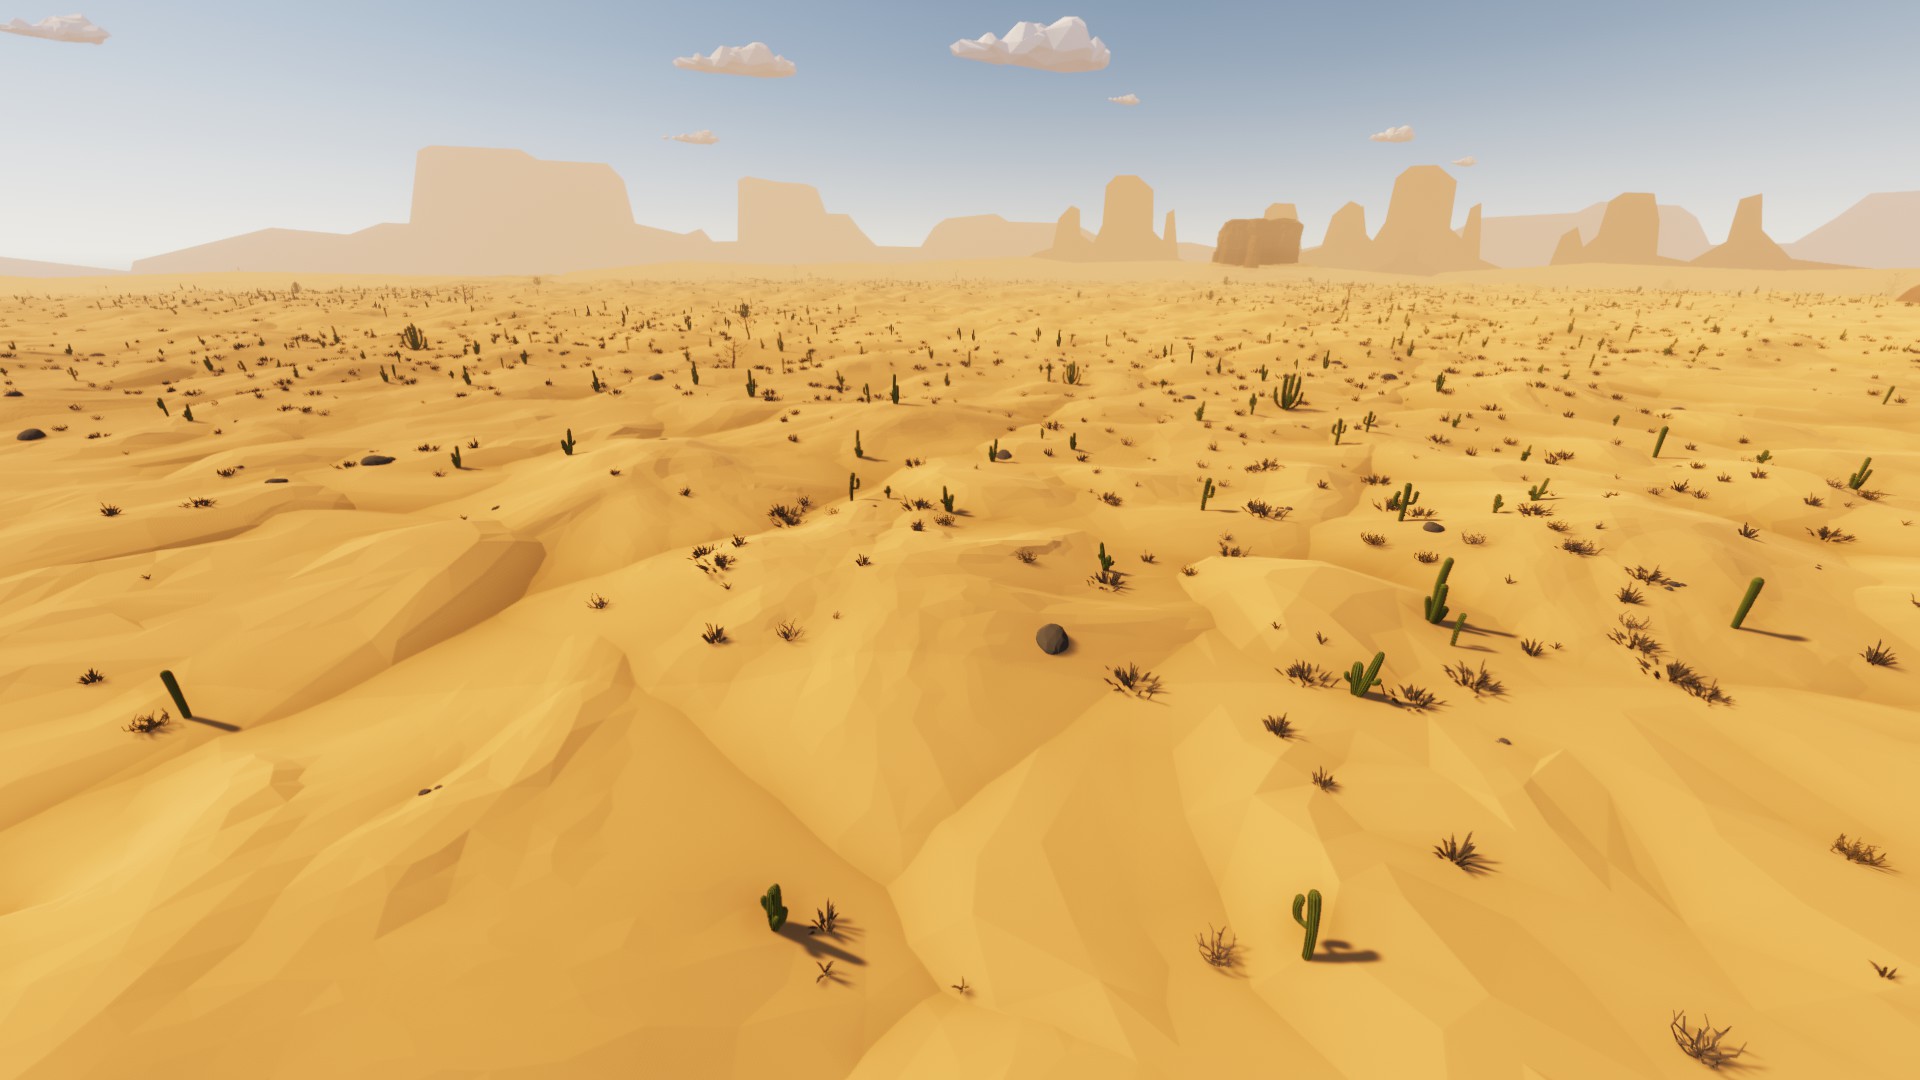 Example of an open desert